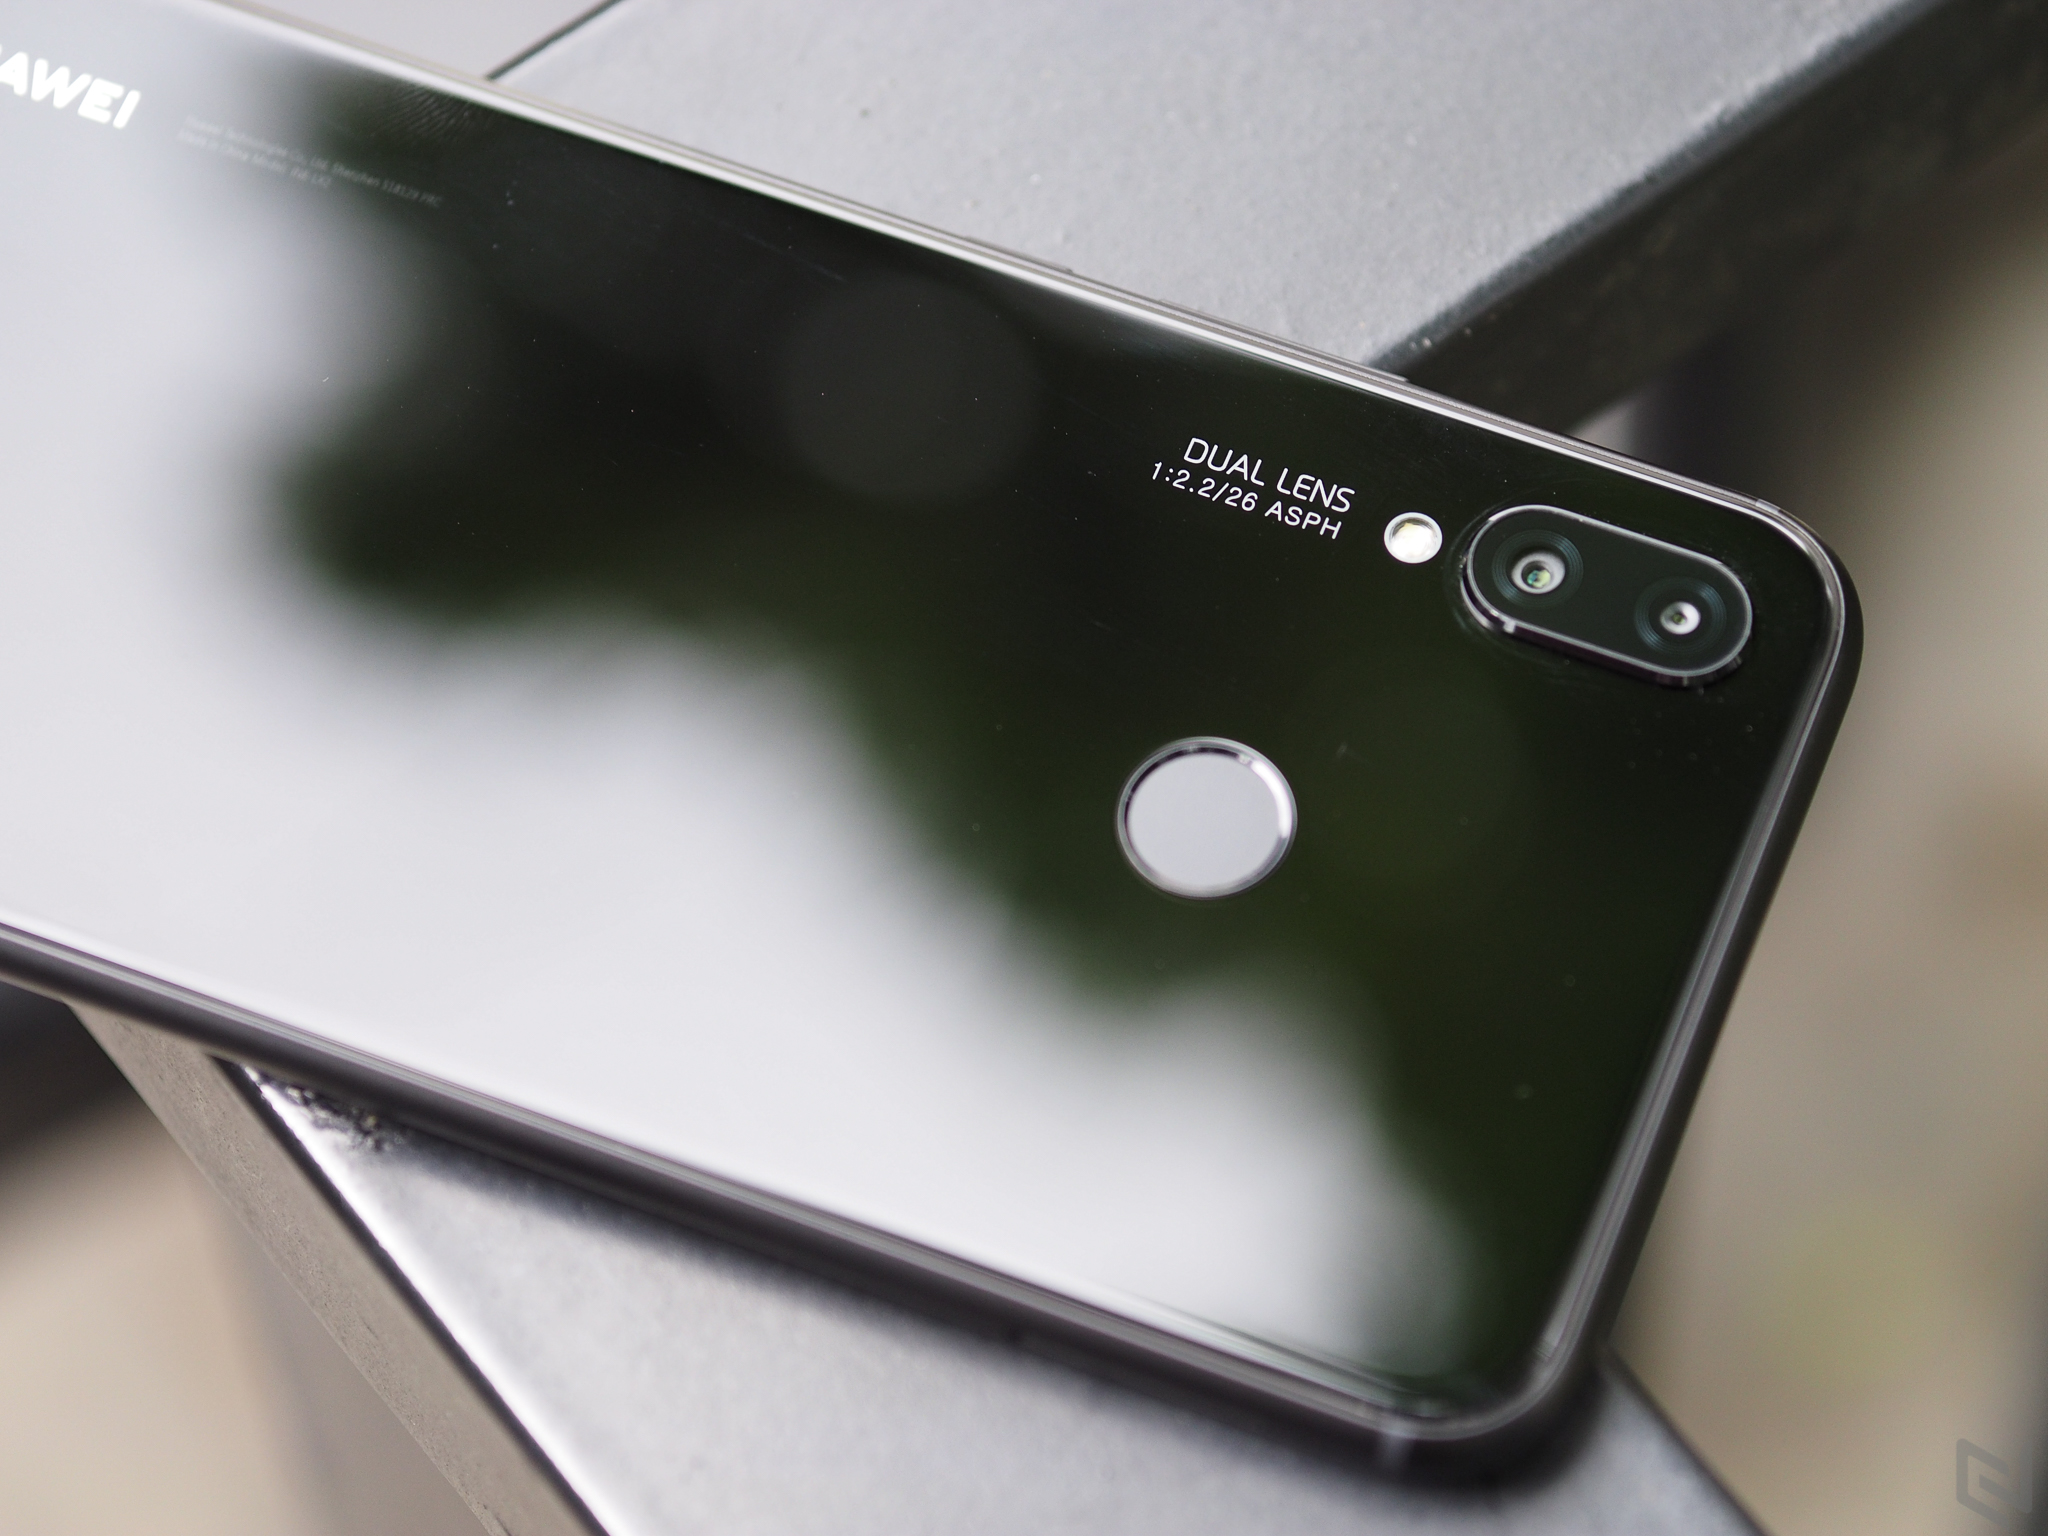 Cập nhật font chữ mới cho Huawei Nova 3i giúp cho trải nghiệm sử dụng điện thoại của bạn thêm phong phú và thú vị hơn bao giờ hết. Cùng trải nghiệm chất lượng hình ảnh và độ sắc nét tuyệt đỉnh từ các nội dung được hiển thị trên màn hình Nova 3i.